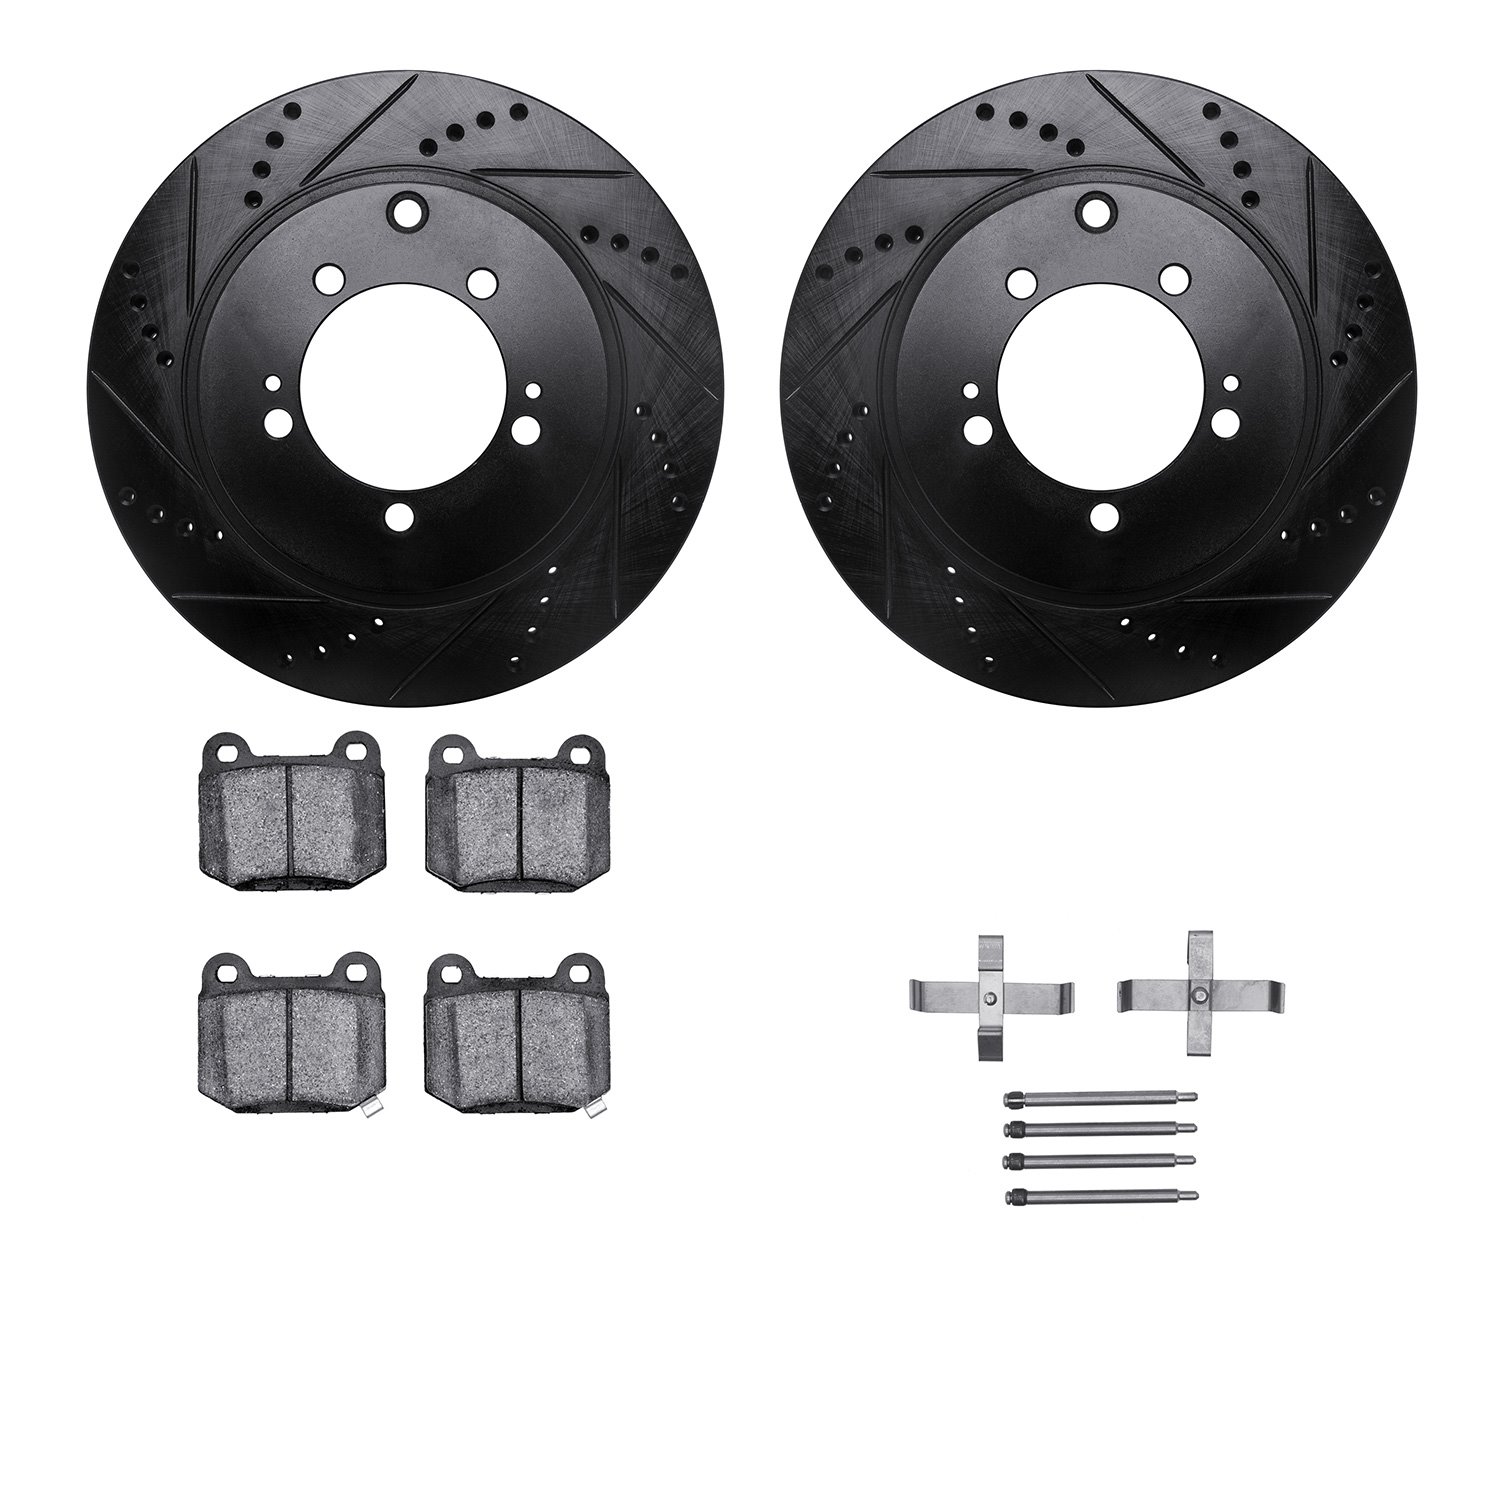 8612-72001 Drilled/Slotted Brake Rotors w/5000 Euro Ceramic Brake Pads Kit & Hardware [Black], 2003-2006 Mitsubishi, Position: R